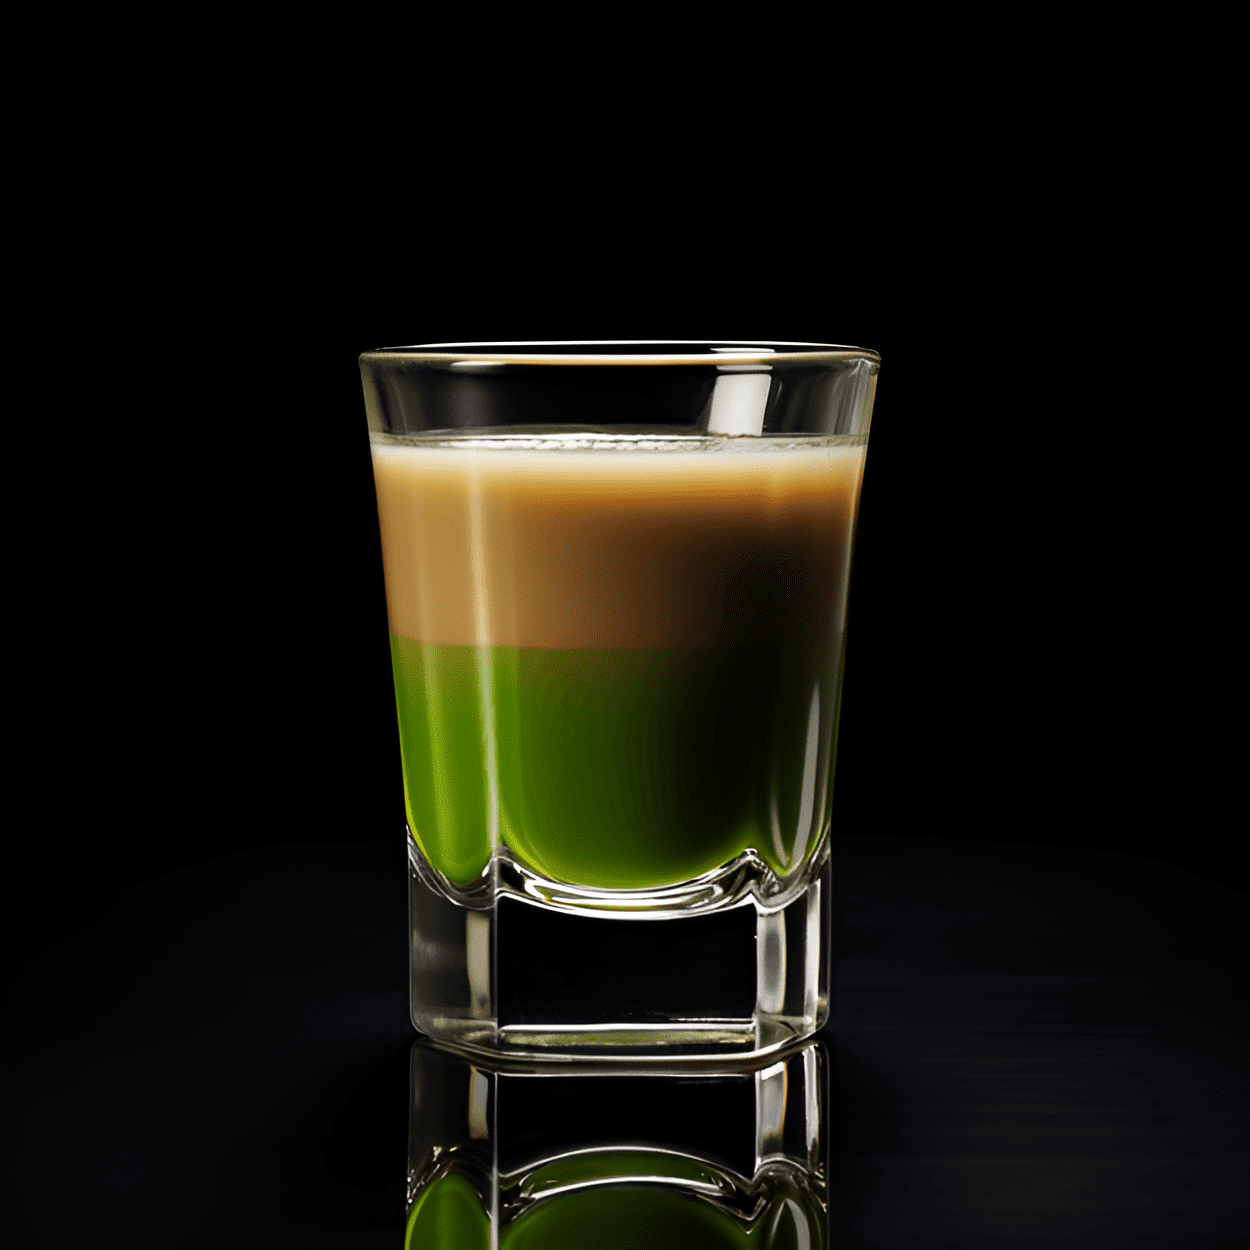 Springbok Cóctel Receta - El cóctel Springbok es una deliciosa mezcla de dulce y cremoso. La frescura mentolada de la crème de menthe se equilibra maravillosamente con la rica y aterciopelada cremosidad de la crema de Amarula. Es como un postre en un vaso, con un sutil toque de alcohol.